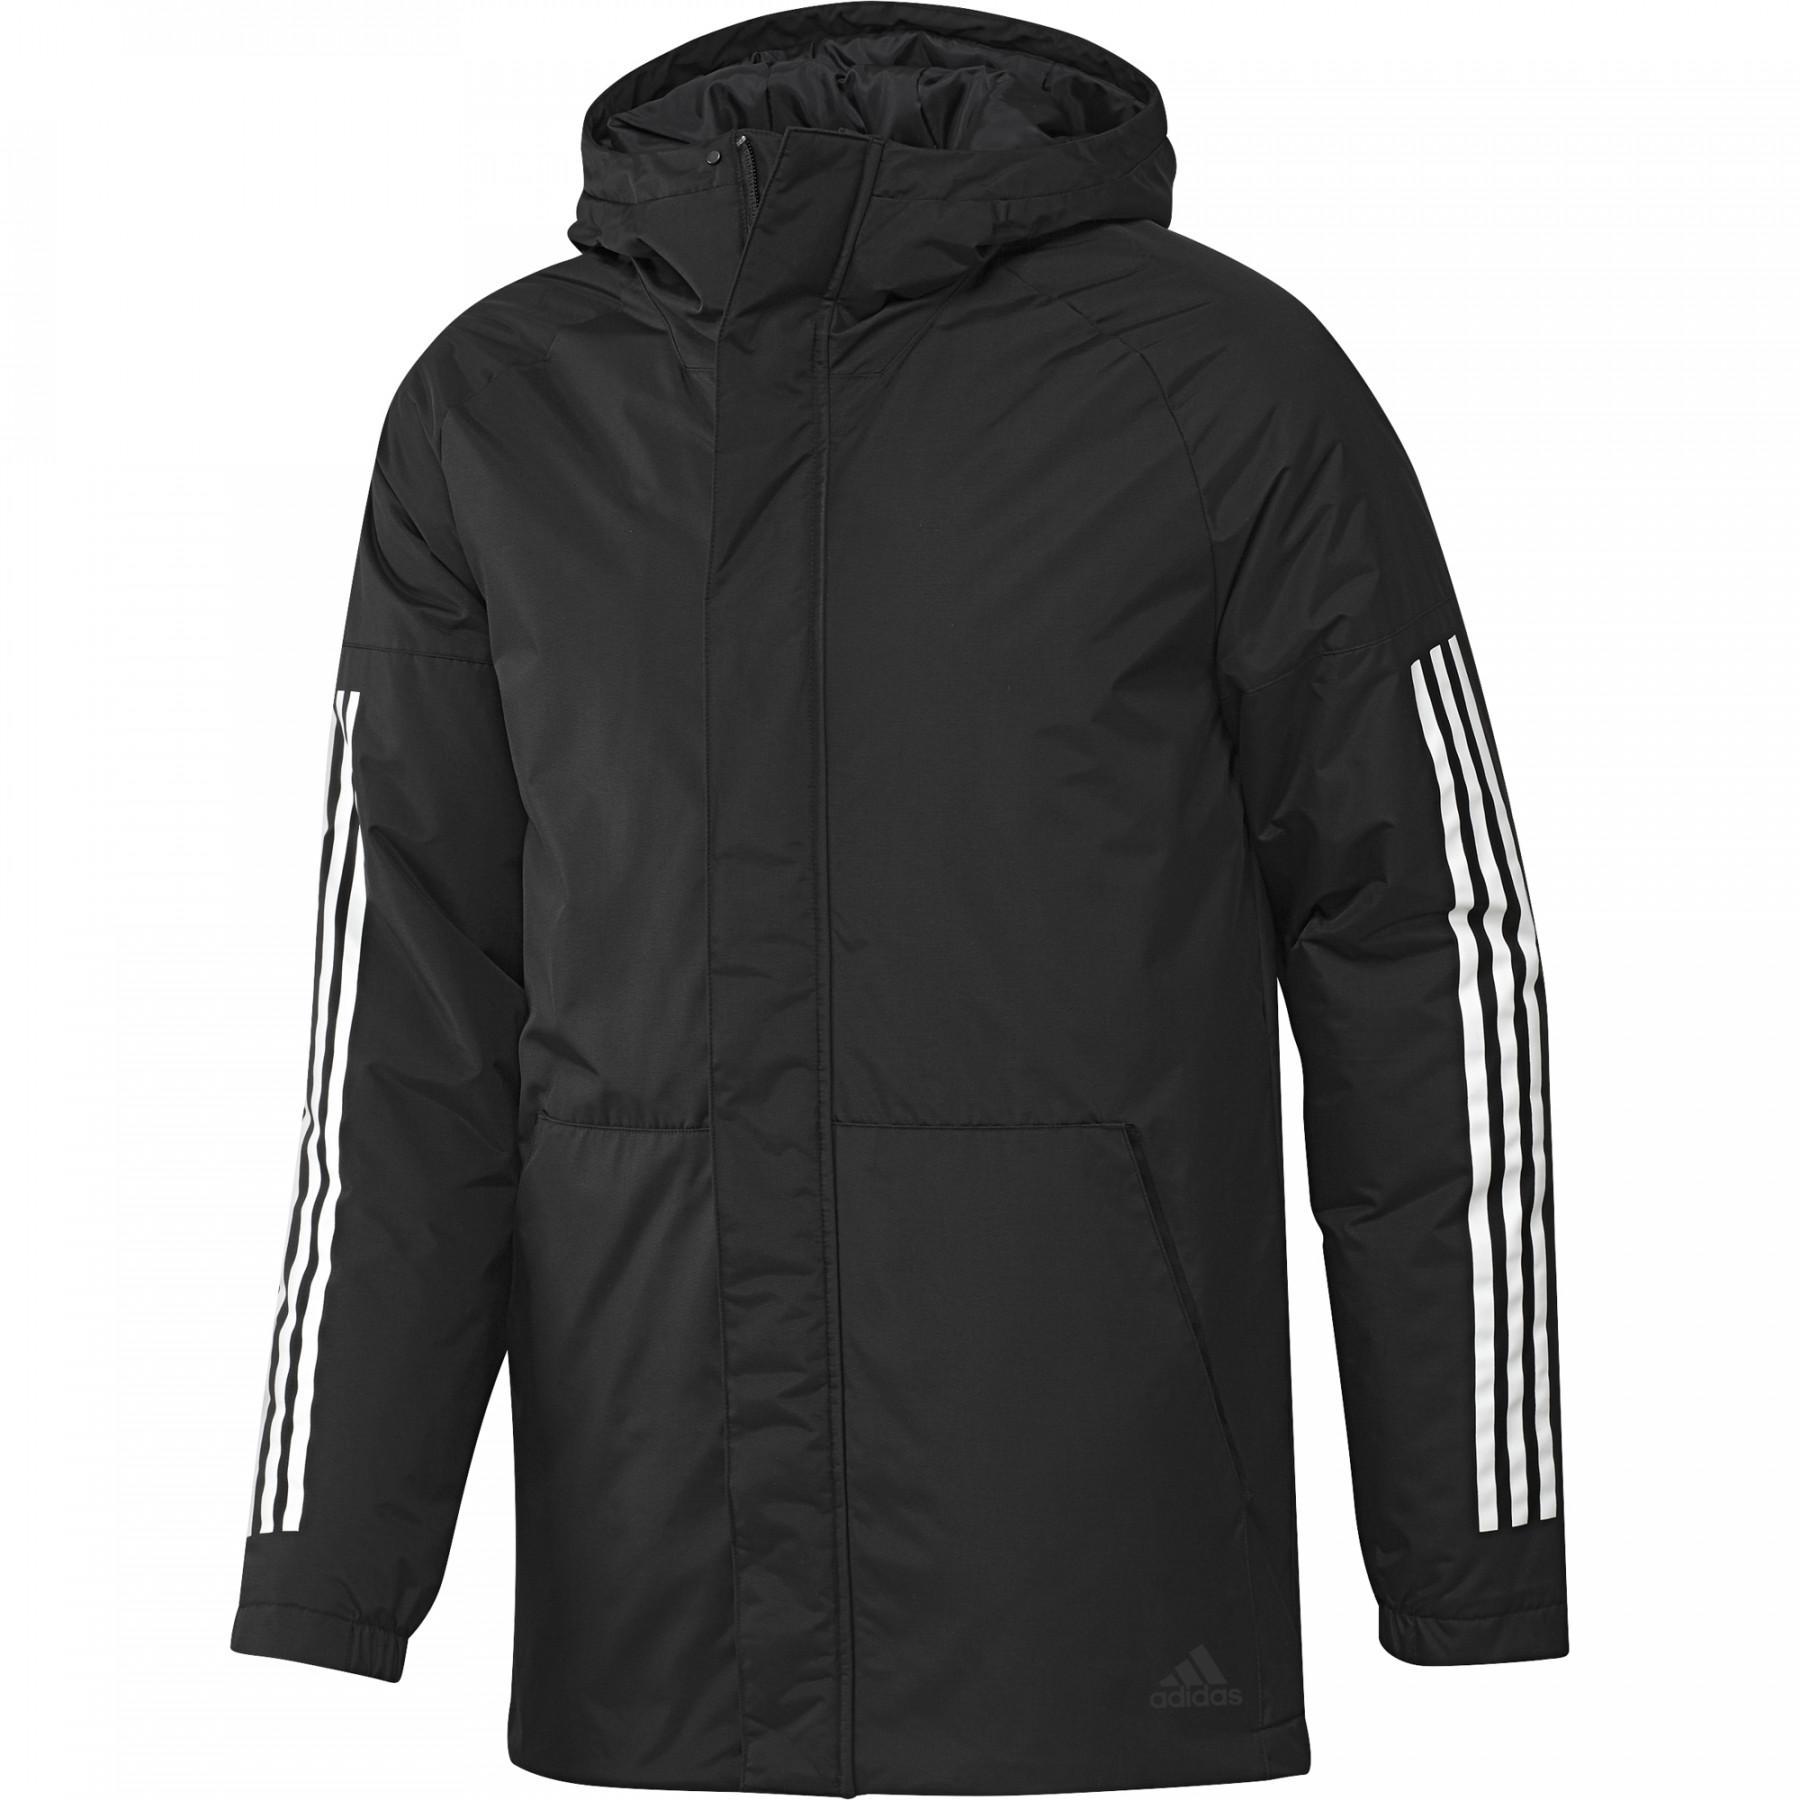 Adidas куртка Xploric 3s